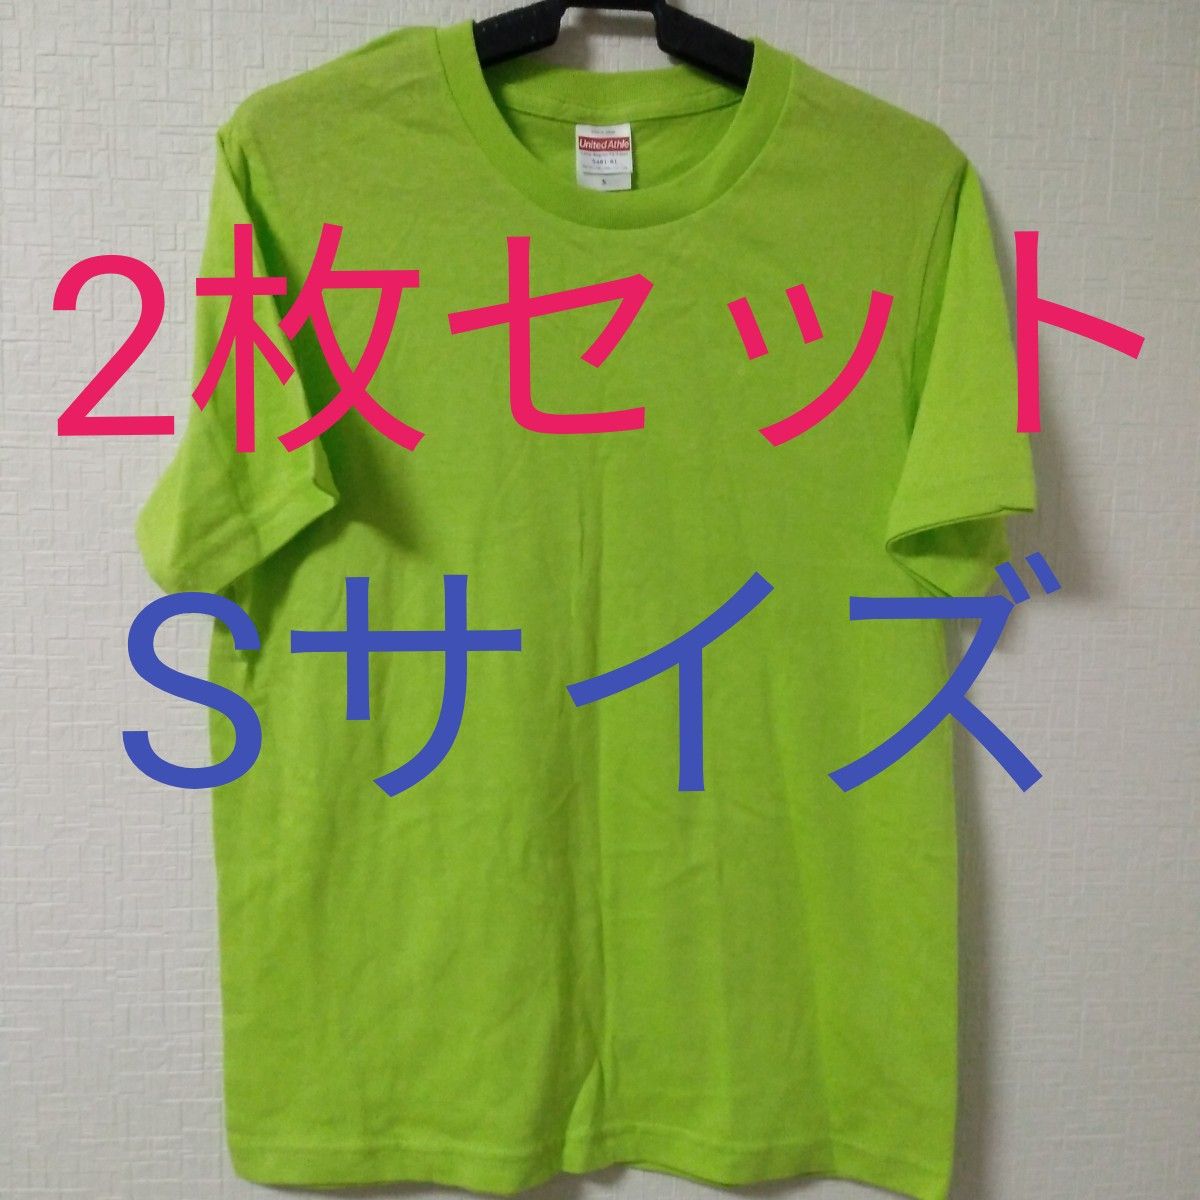 無地の黄緑色Sサイズ半袖テーシャツ2枚セット